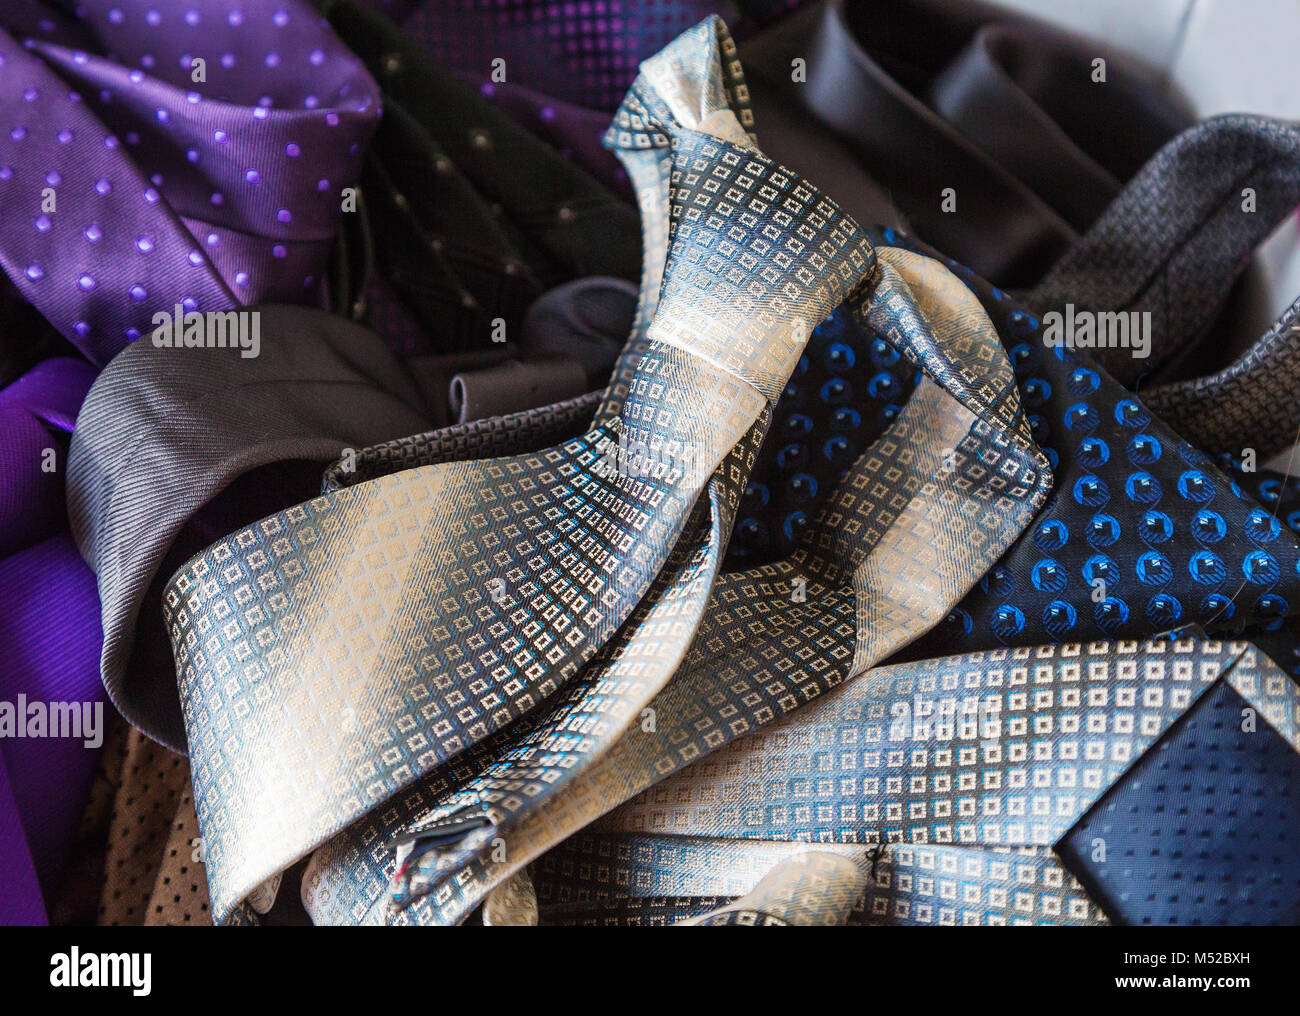 Men's fashion tie Stock Photo